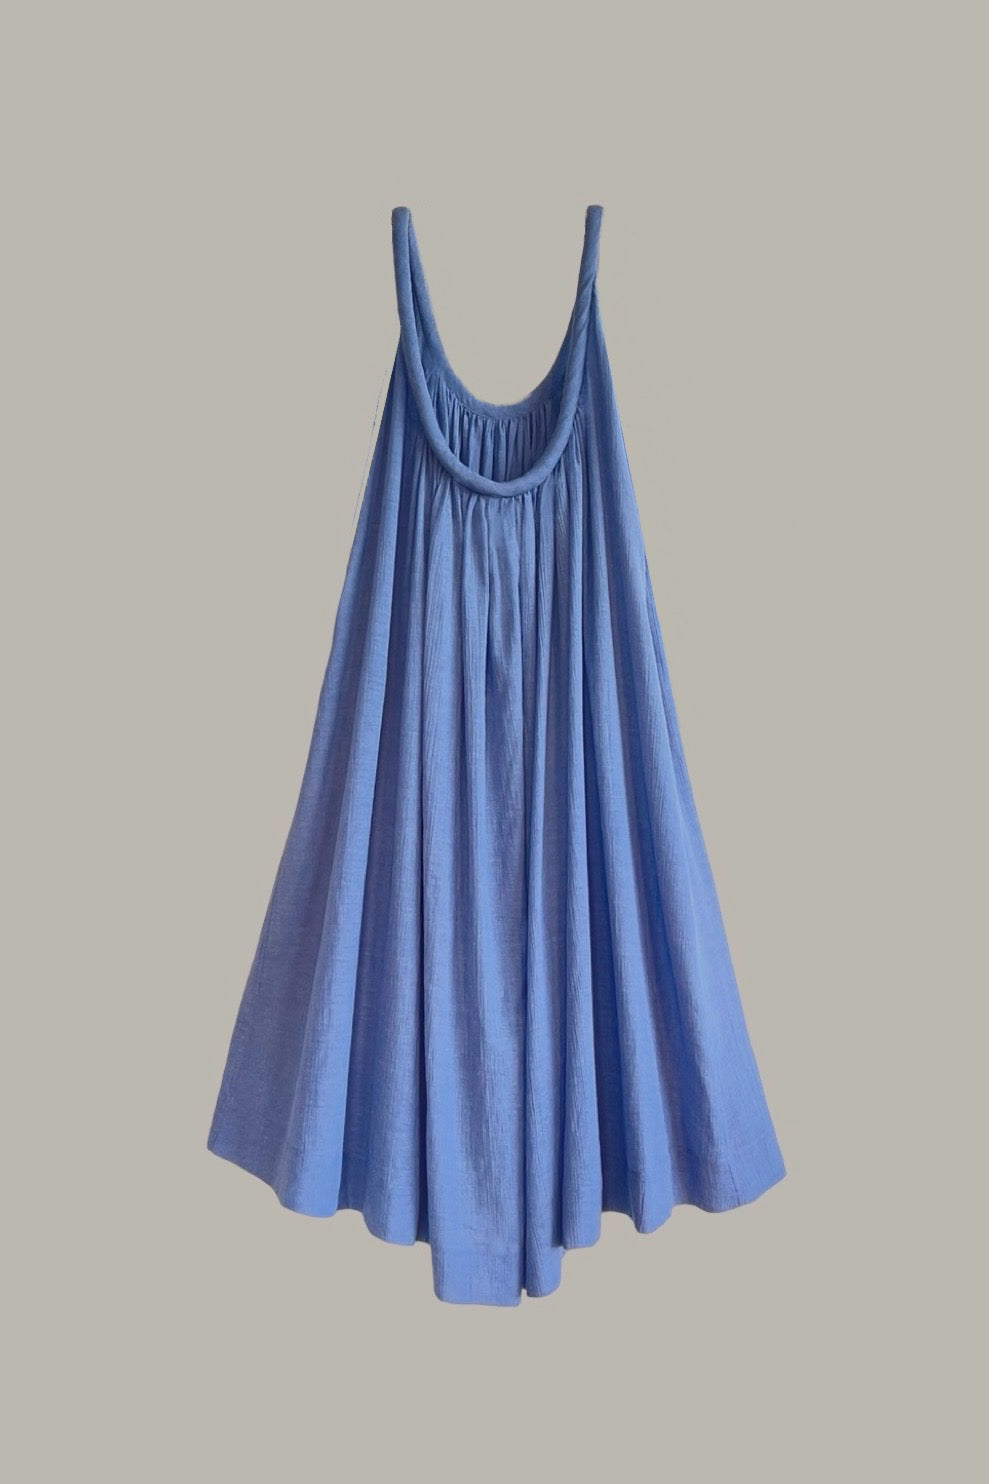 Sahara Chemise Dress French Blue Cotton Gauze